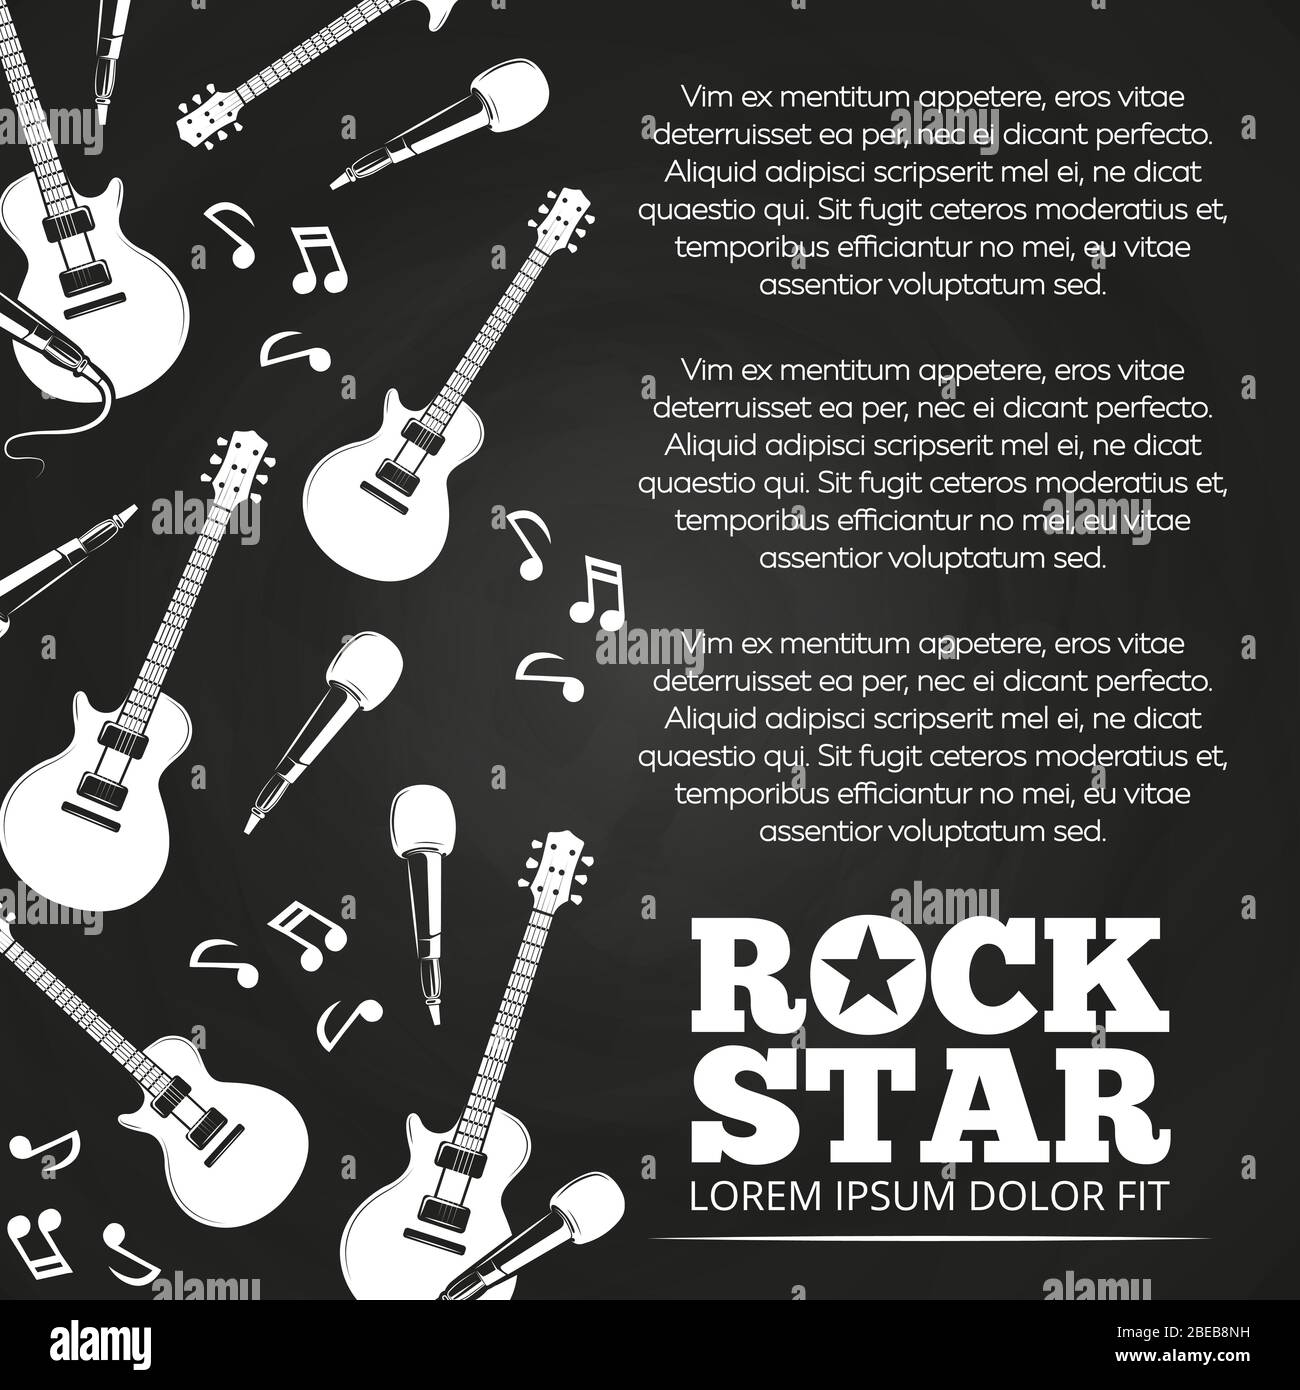 Rock star chalkboard poster design. Music banner, vector monochrome illustration Stock Vector